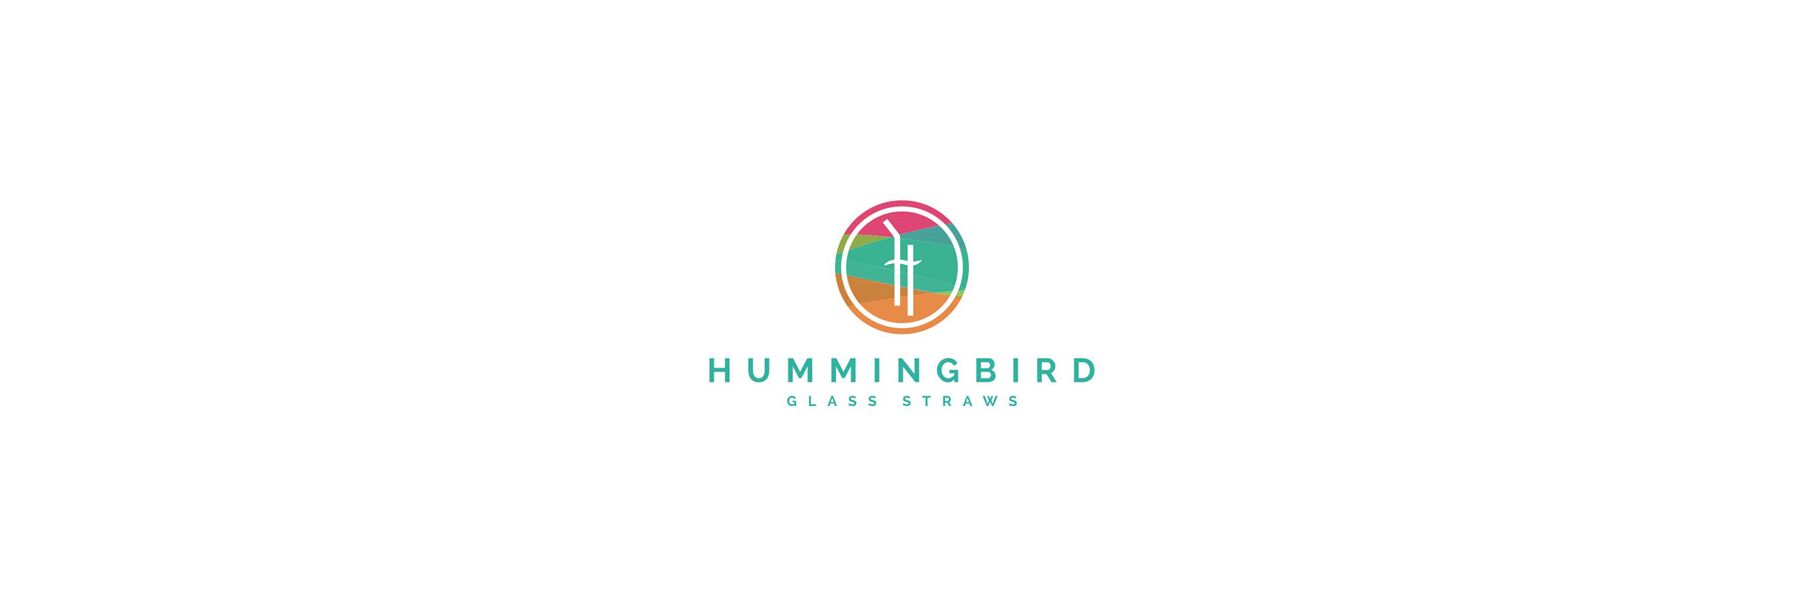 Hummingbird Glass Straws ist ein kleiner...